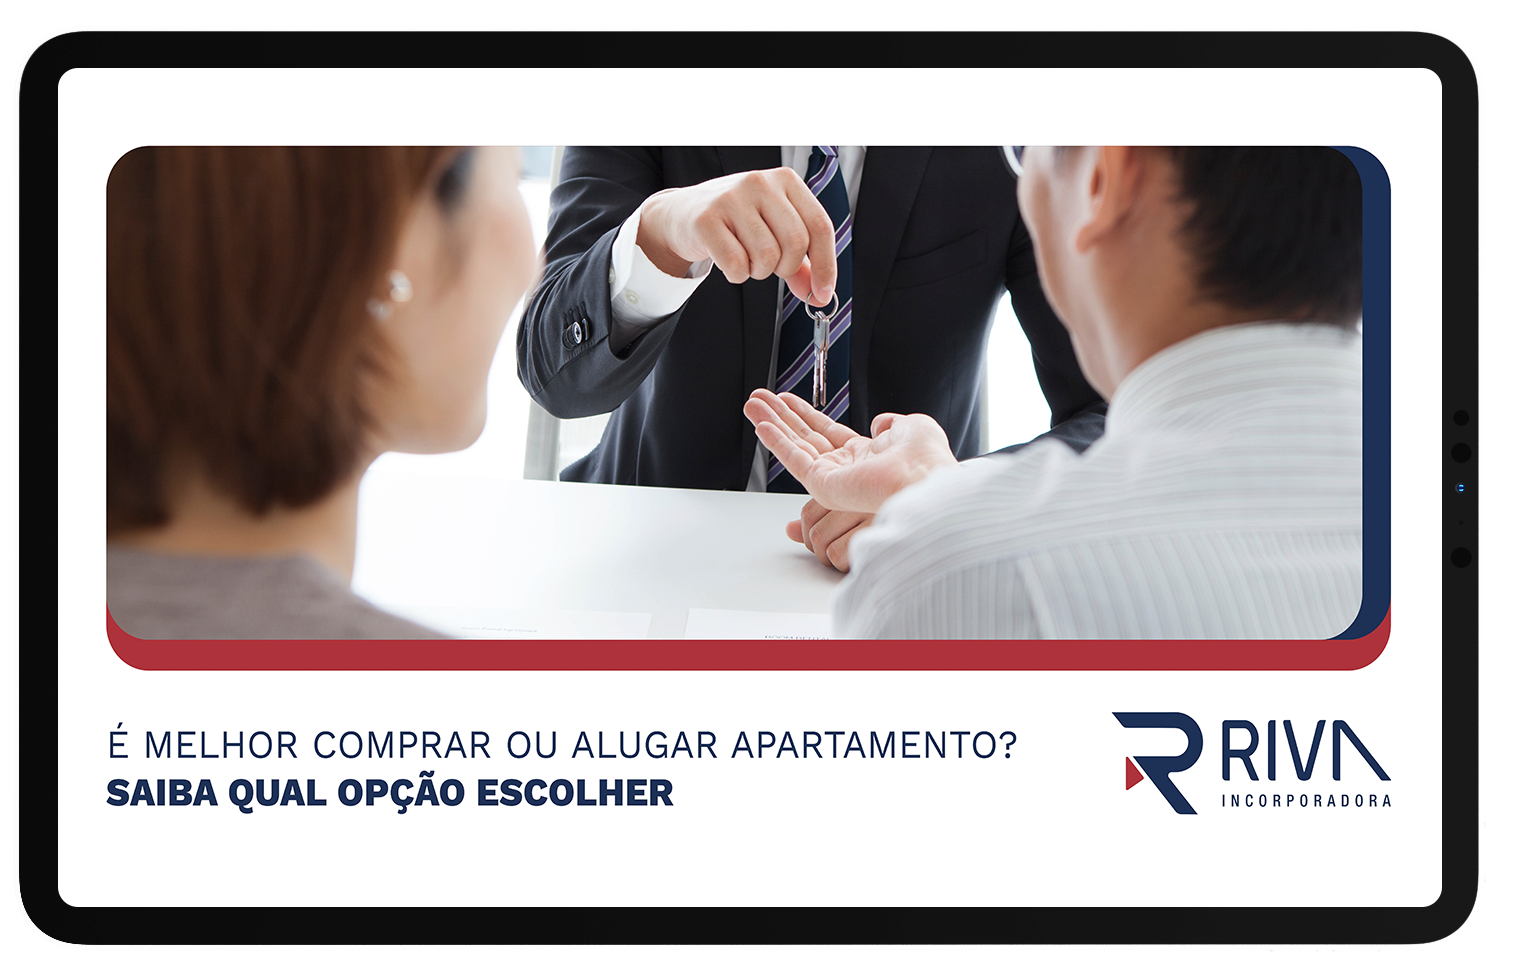 Comprar ou alugar um apartamento Saiba qual é a melhor opção para escolher